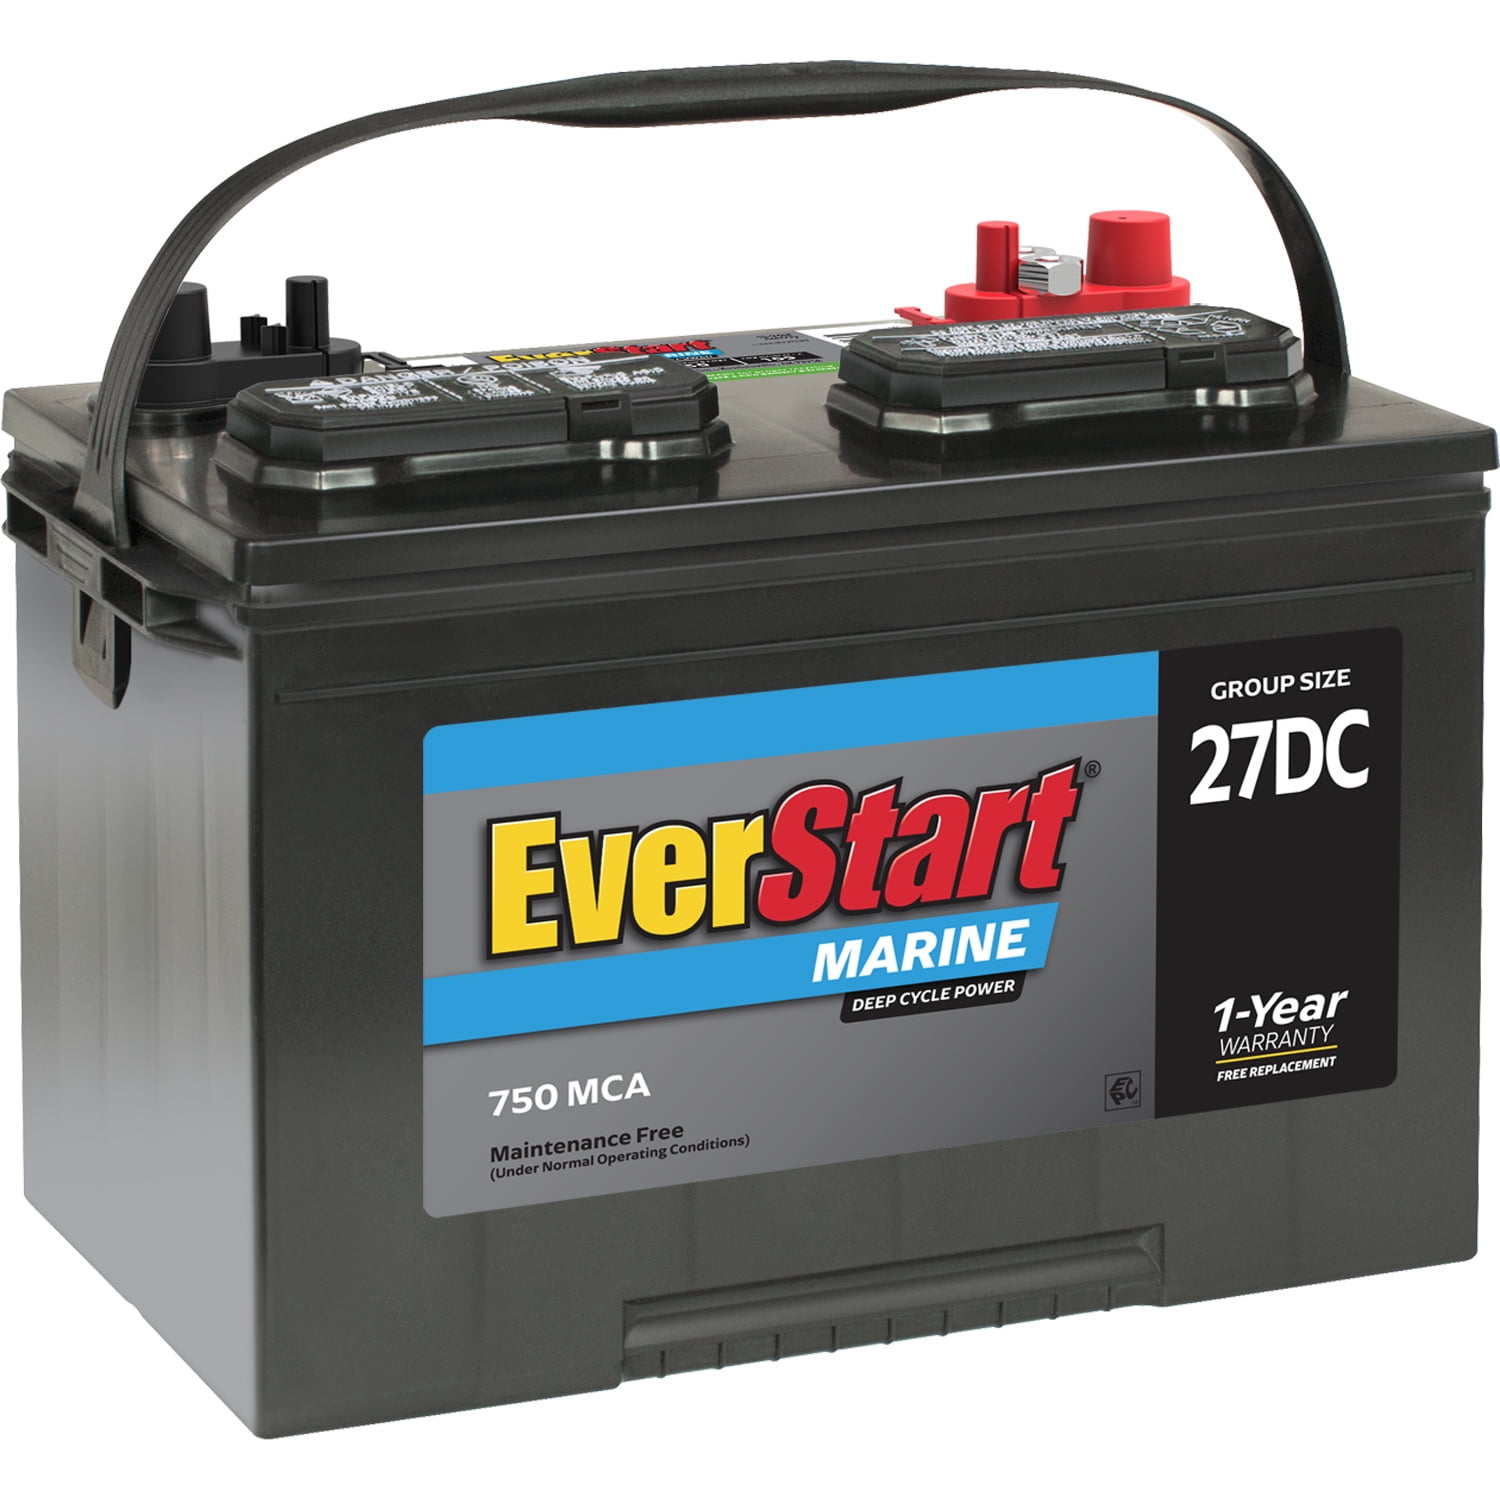 ubehageligt indbildskhed pengeoverførsel EverStart Lead Acid Marine & RV Deep Cycle Battery, Group Size 27DC (12  Volt/750 MCA) - Walmart.com